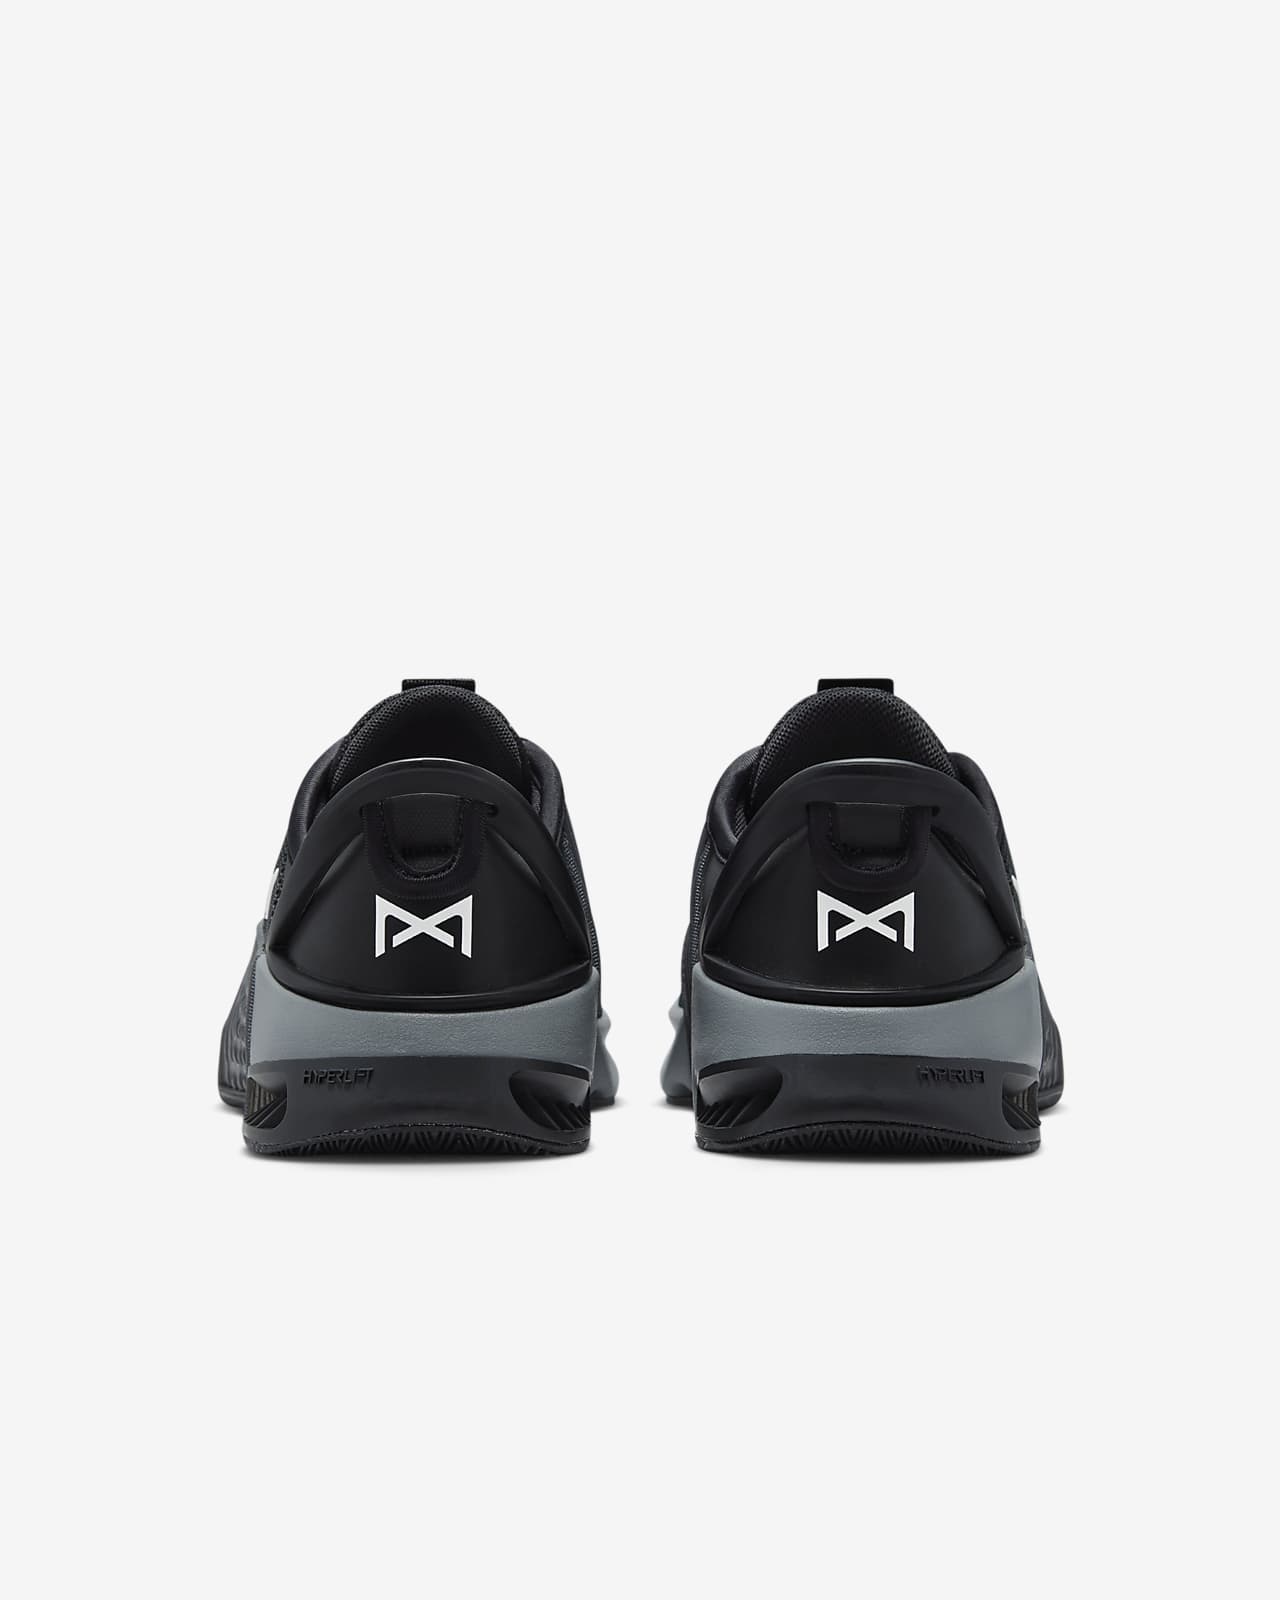 Calzado de entrenamiento para hombre Nike Metcon 9 EasyOn. Nike MX